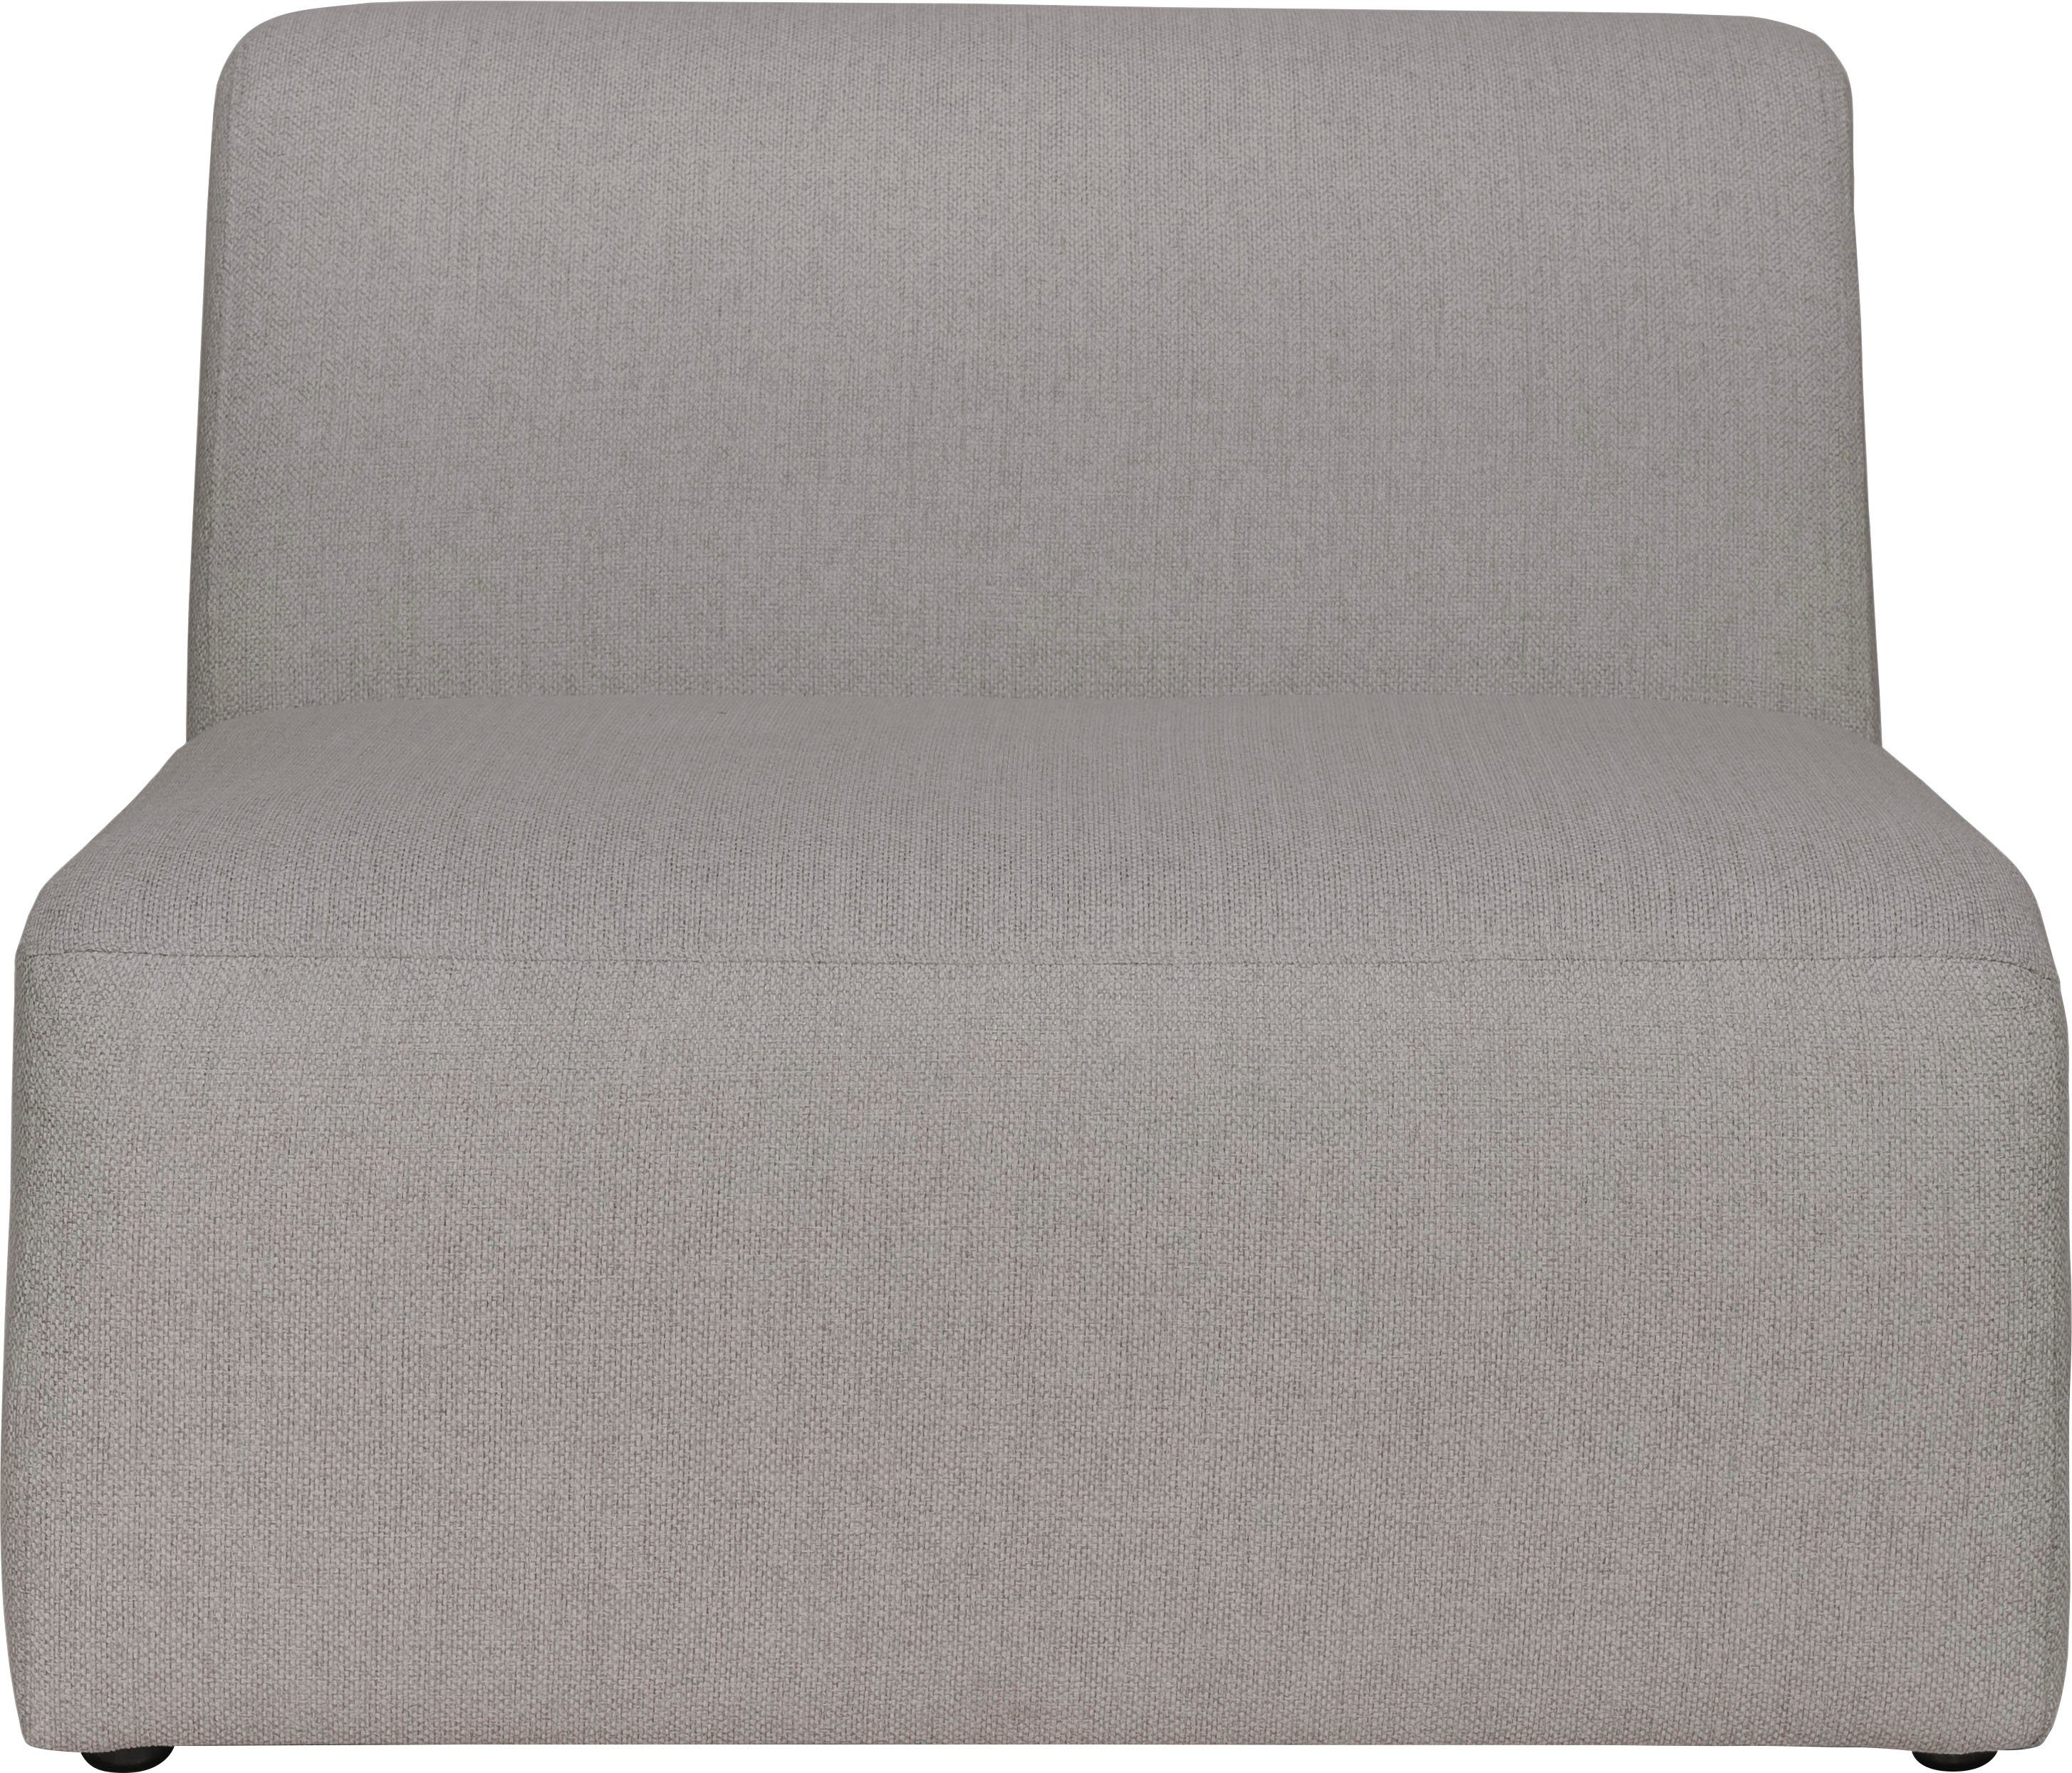 Koa, warm Proportionen schöne grey Sofa-Mittelelement Komfort, INOSIGN angenehmer